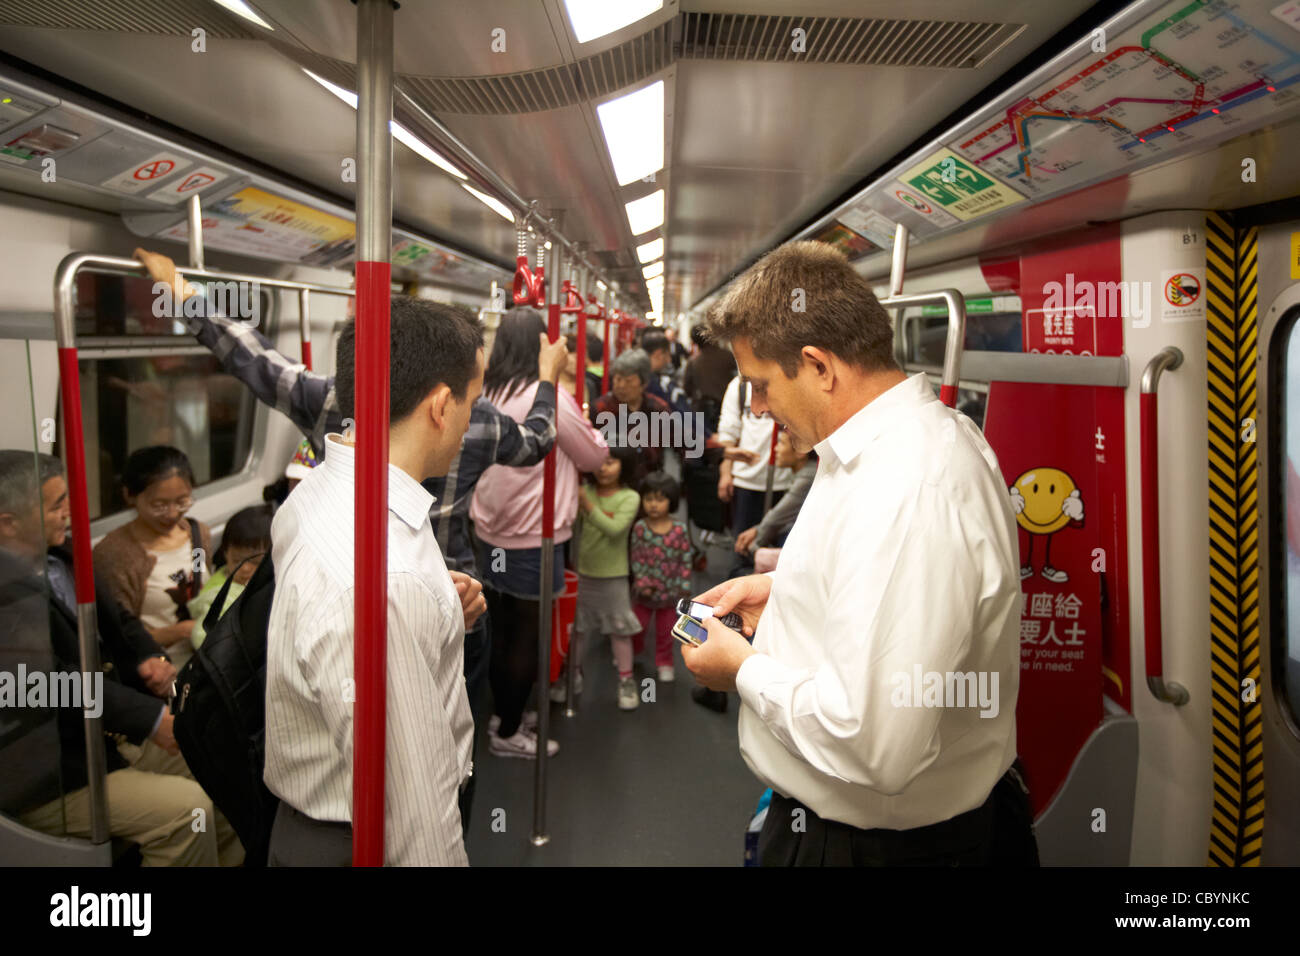 westliche Geschäftsleute mit Mobiltelefonen in Zug Beförderung auf Hong Kong Mtr öffentlichen transport System Sonderverwaltungsregion Hongkong China Asien Stockfoto